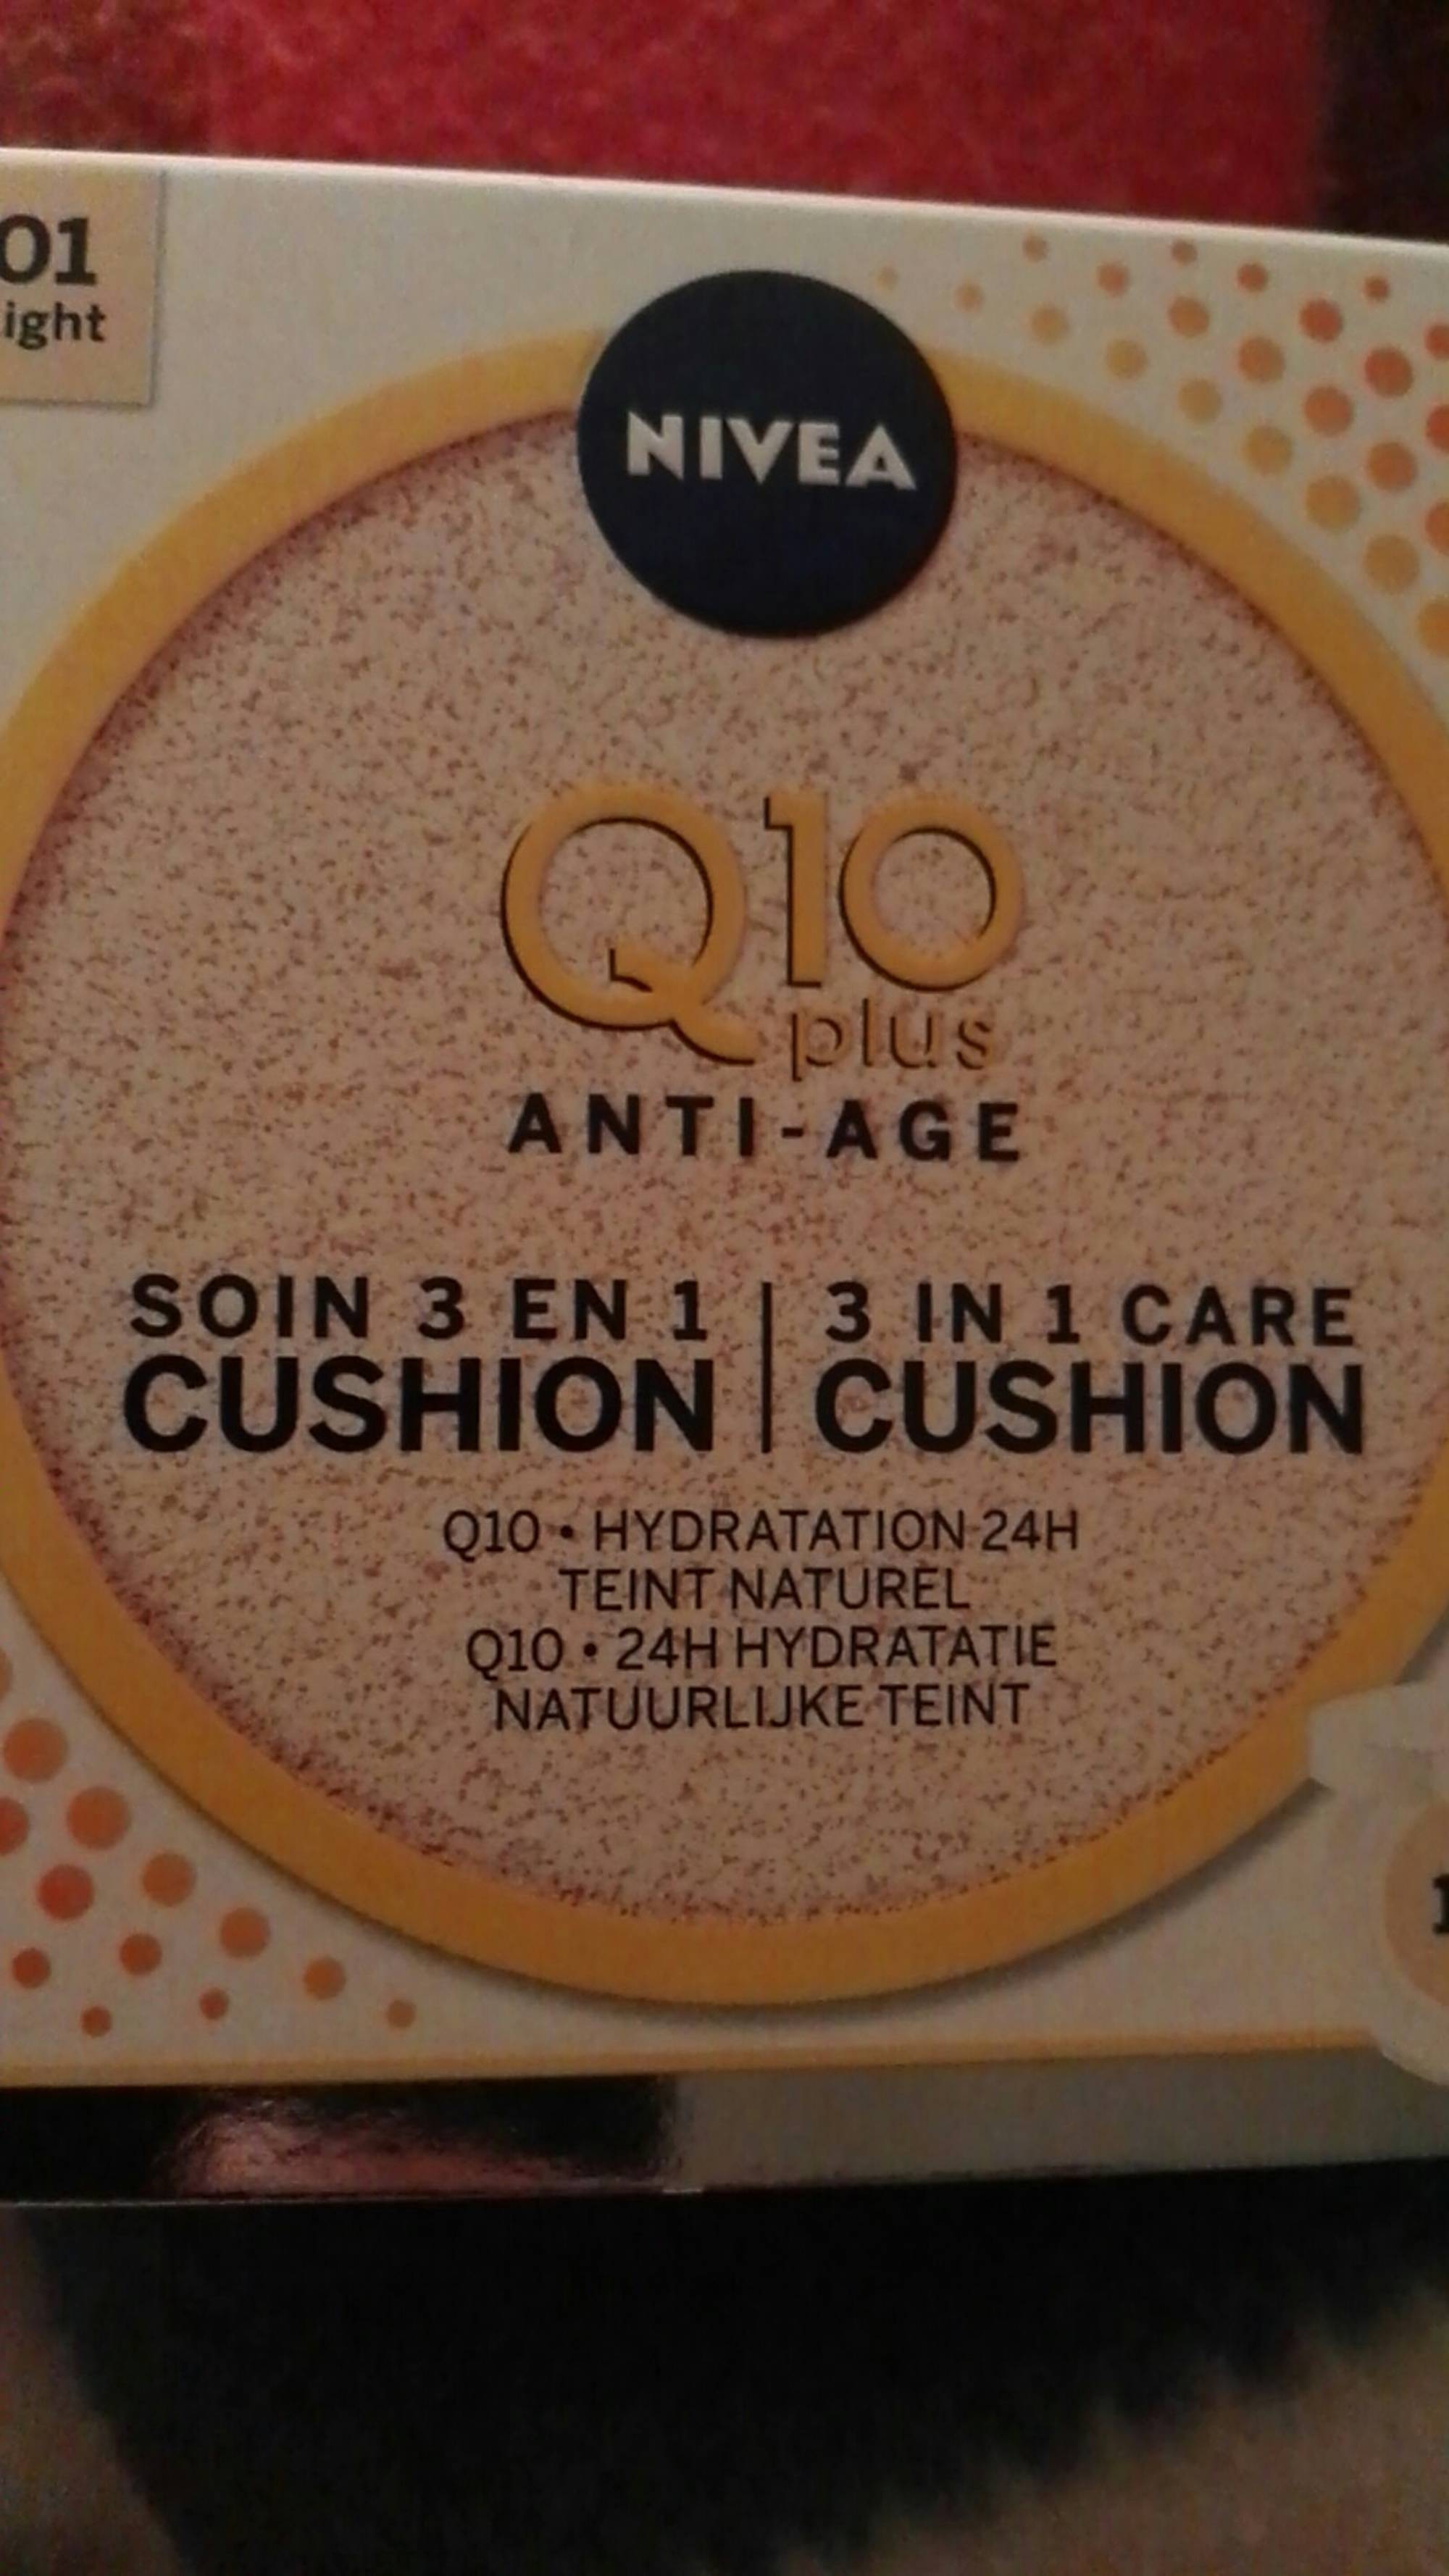 NIVEA - Q10 plus anti-âge - Soin 3 en 1 cushion